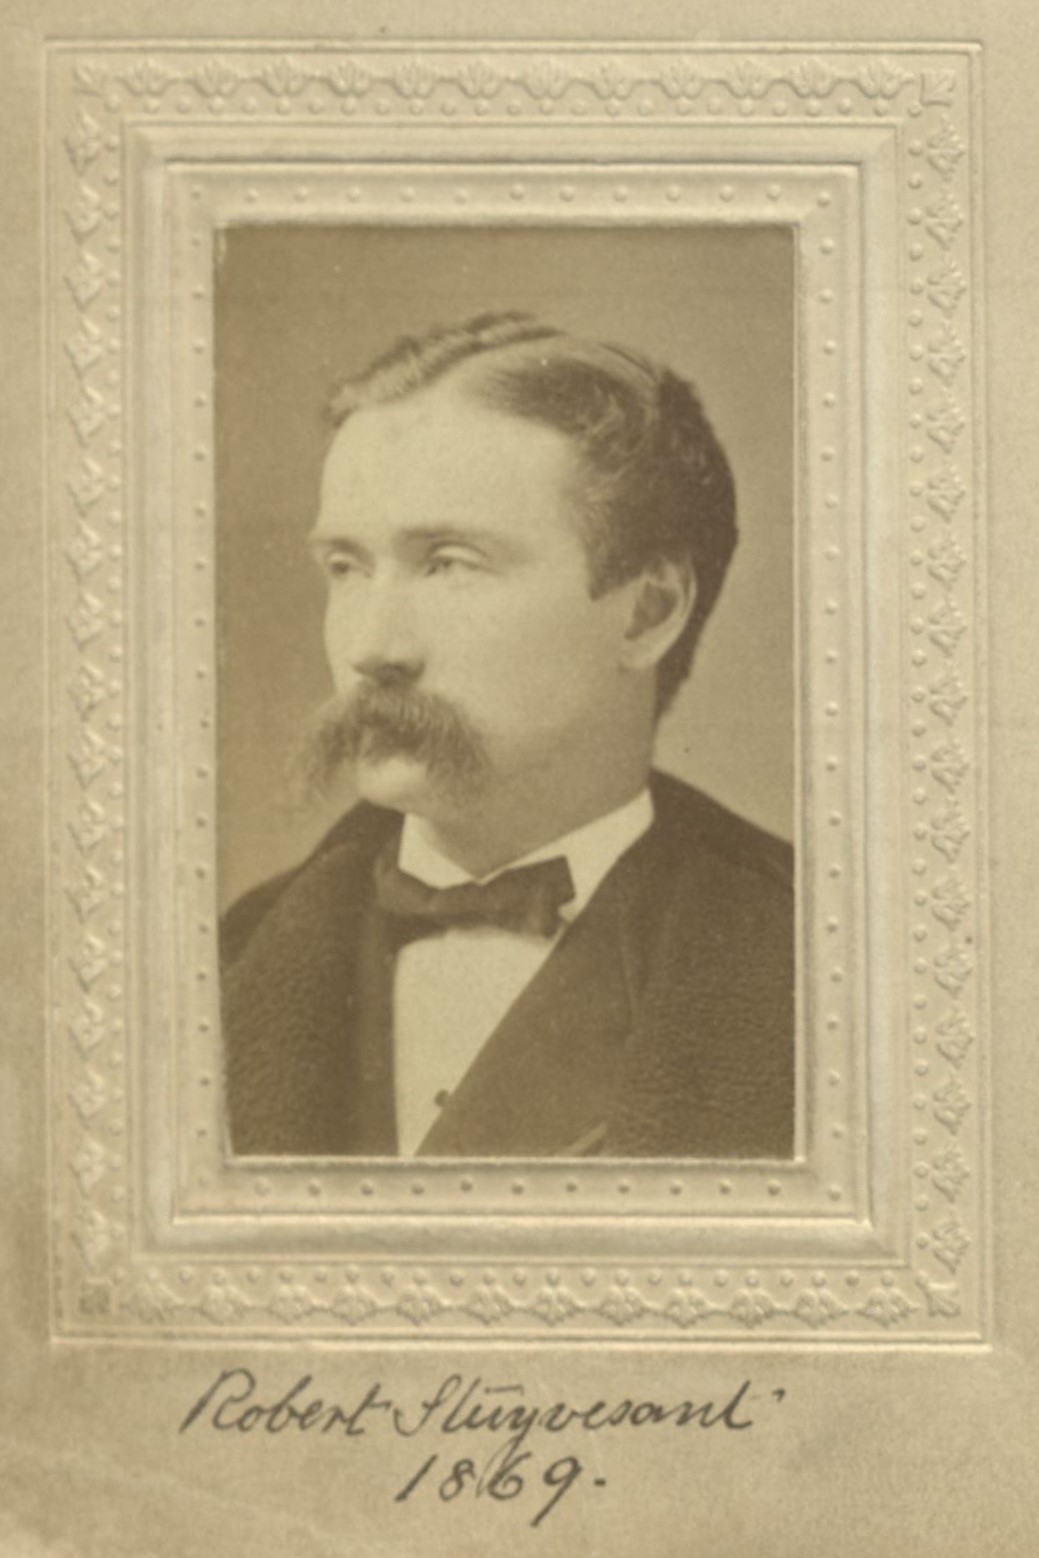 Member portrait of Robert Stuyvesant